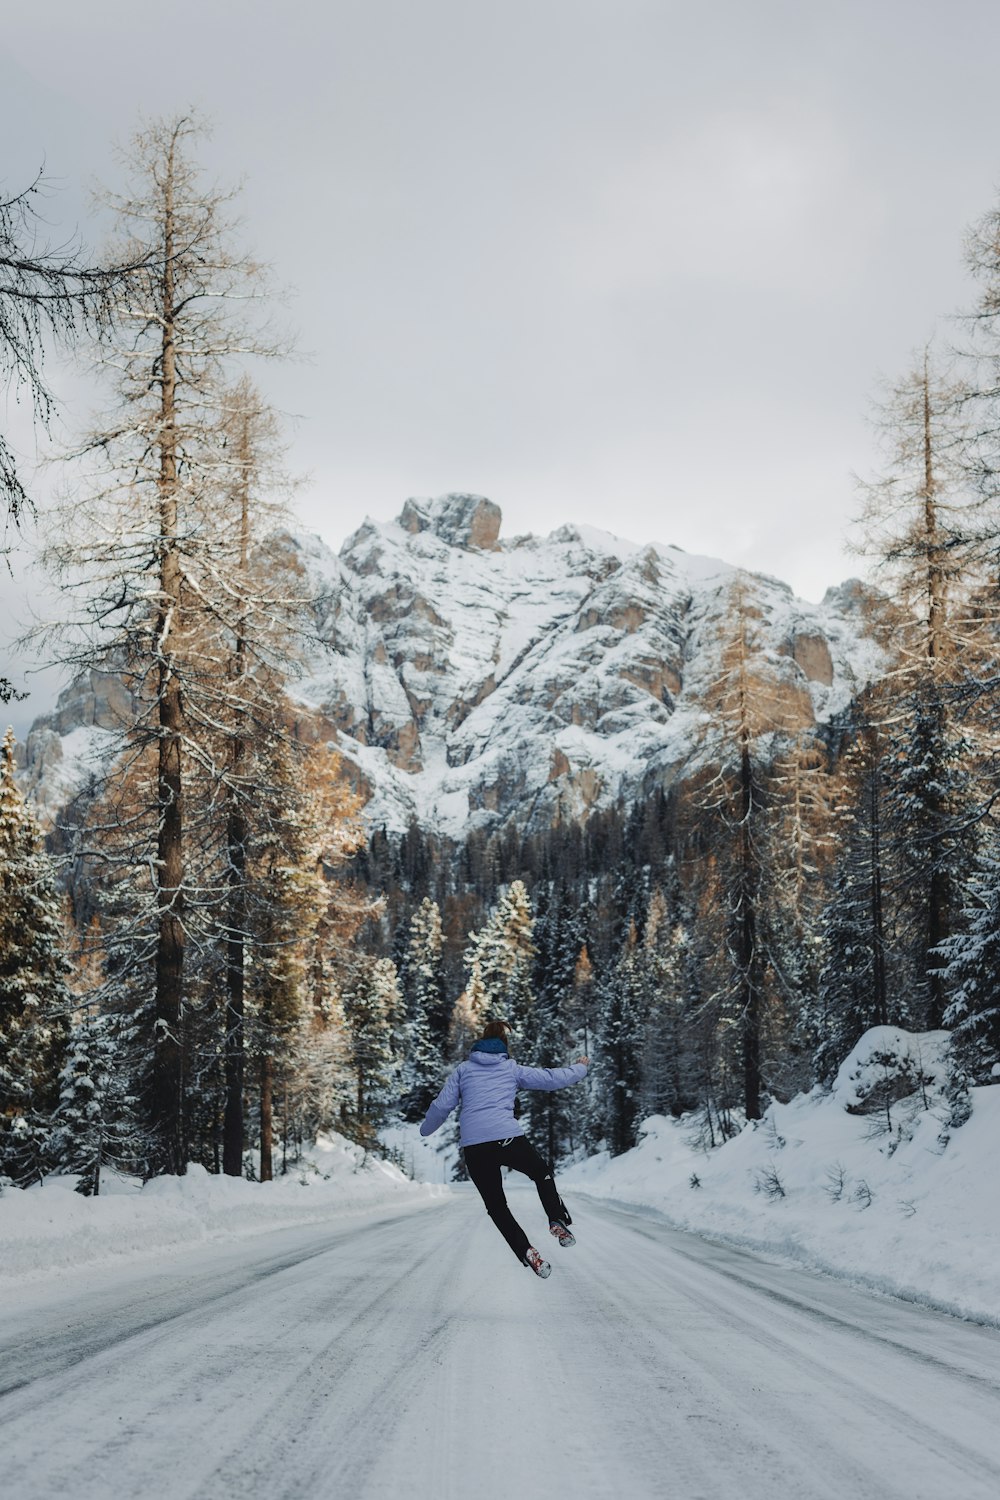 uma pessoa está esquiando por uma estrada nevada